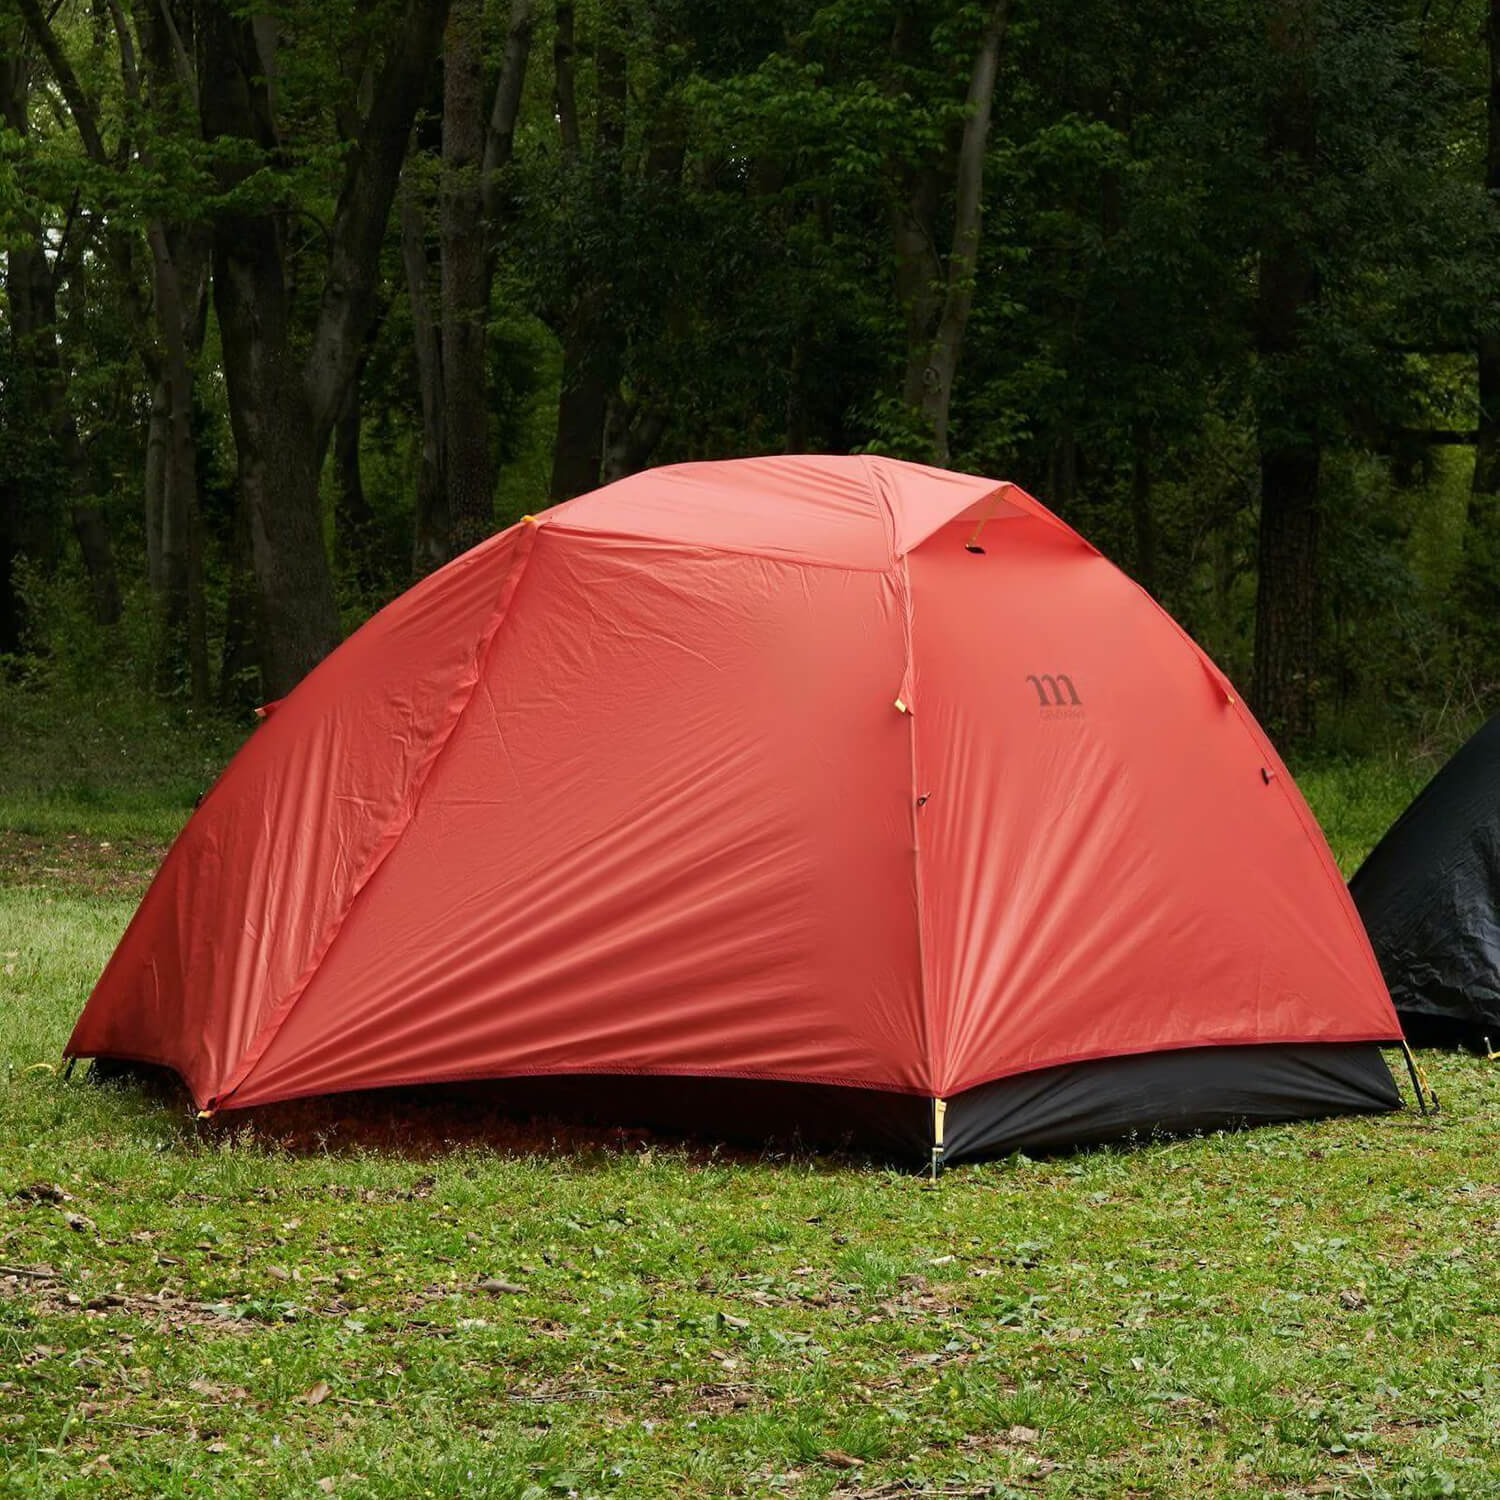 PICKUP】エアーマットでテント泊の睡眠の質を向上｜タイプ別3モデルを 